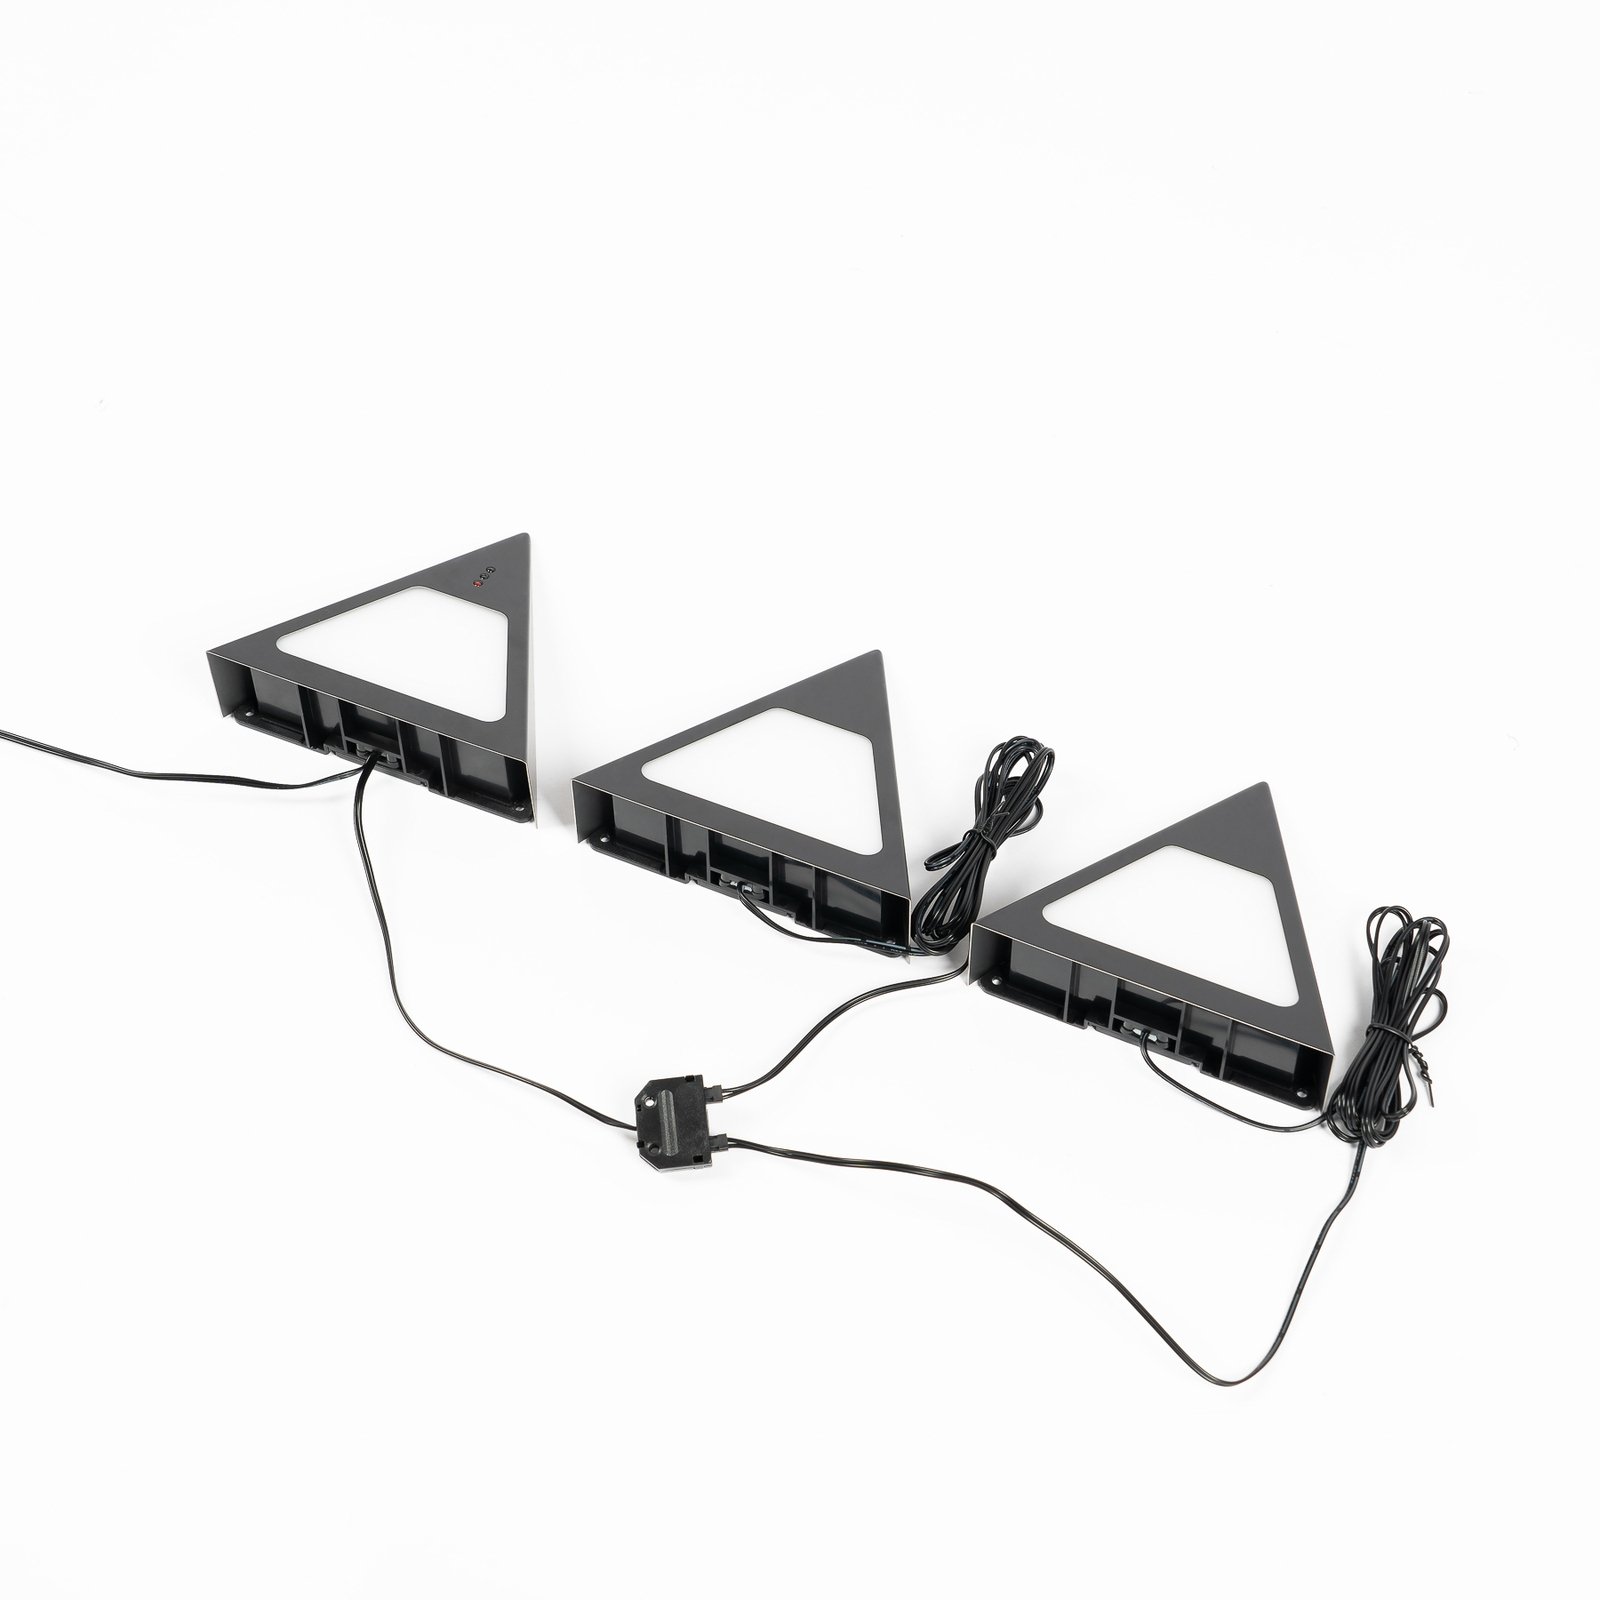 Prios Odia LED-Unterbauleuchte, schwarz, 3er